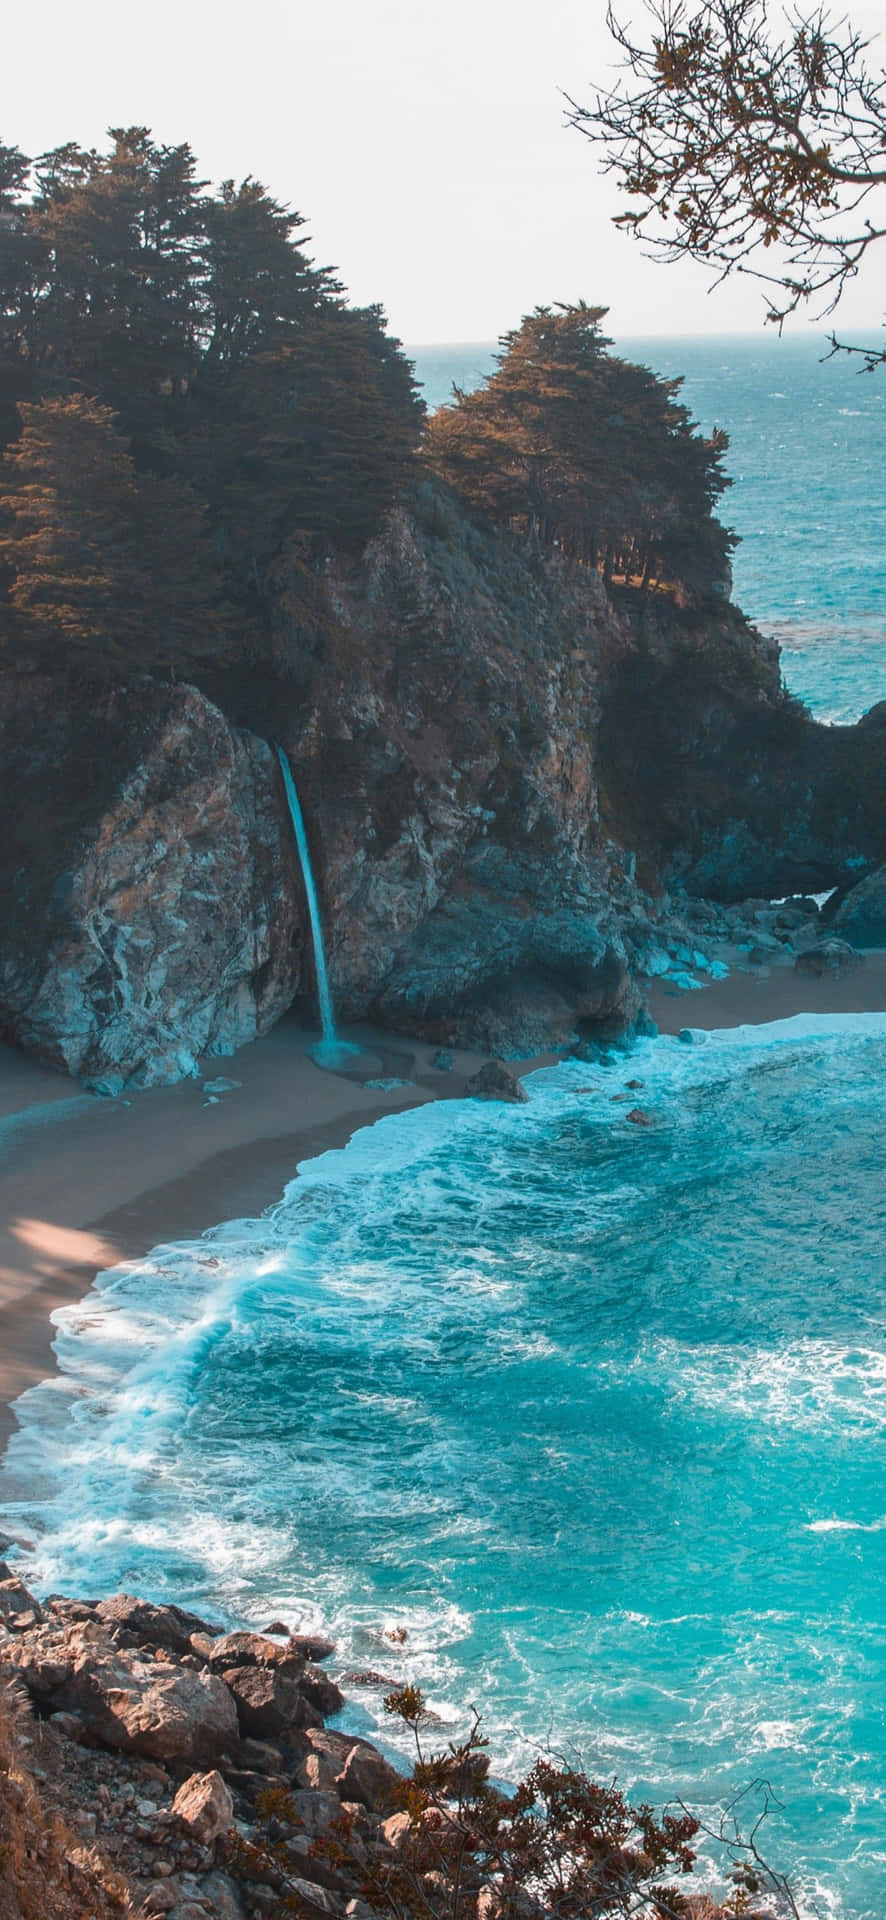 Fondode Pantalla Para Iphone Con La Naturaleza De La Playa De Arena Blanca En 4k. Fondo de pantalla